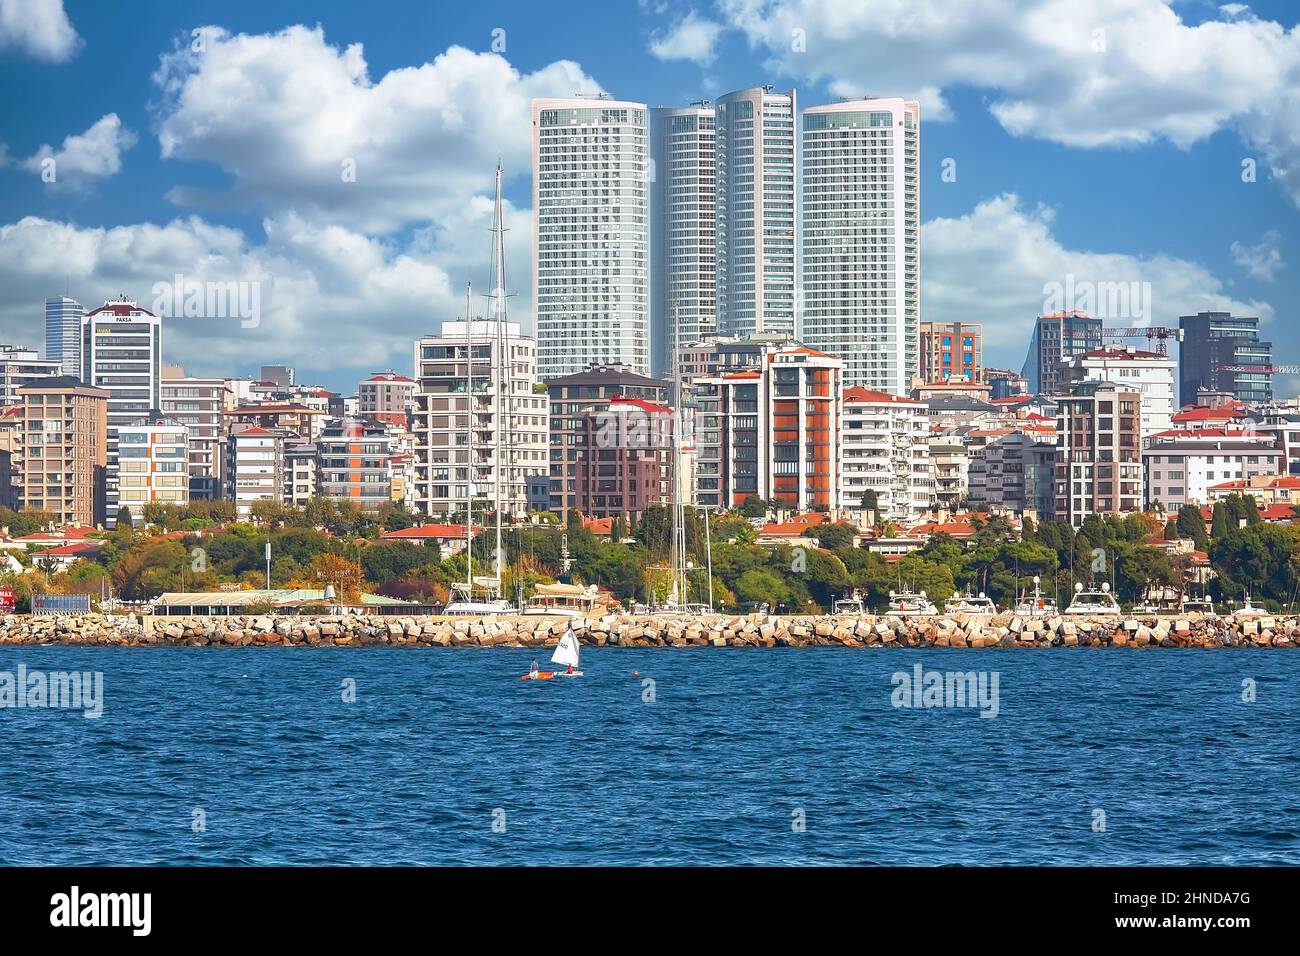 ISTANBUL, TÜRKEI - 9th. Oktober 2019: Echte Architektur am Ufer des Bosporus, beliebtes Reiseziel und wichtiger Durchgang zwischen der EU Stockfoto